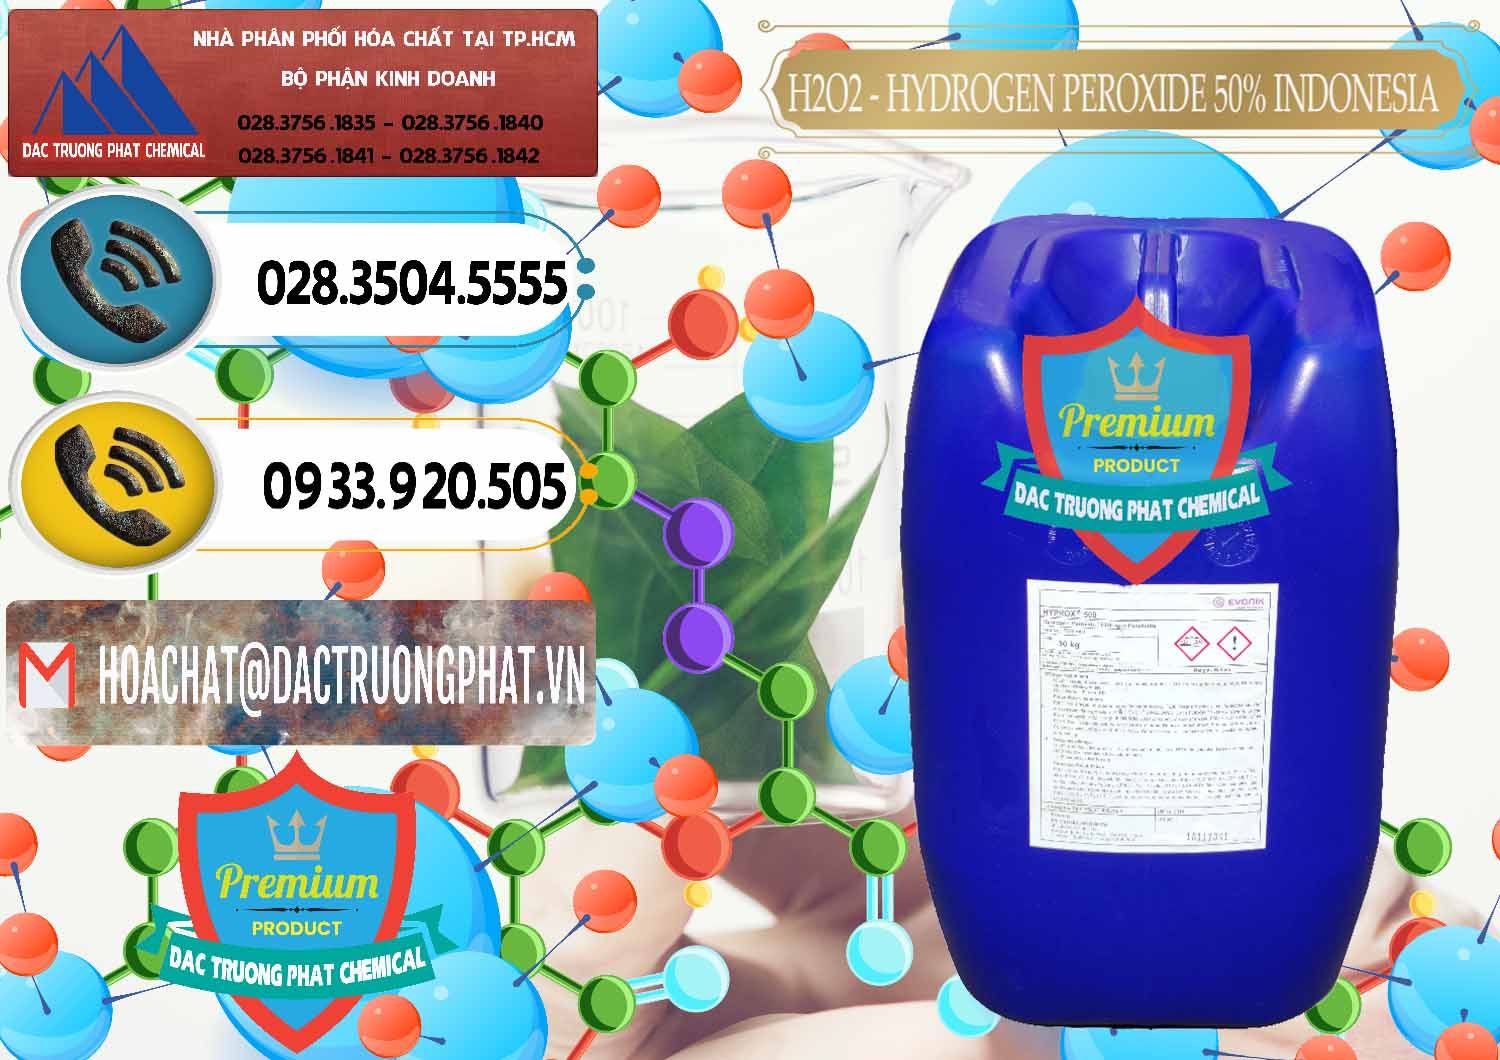 Cty chuyên cung ứng _ bán H2O2 - Hydrogen Peroxide 50% Evonik Indonesia - 0070 - Công ty bán & cung cấp hóa chất tại TP.HCM - hoachatdetnhuom.vn